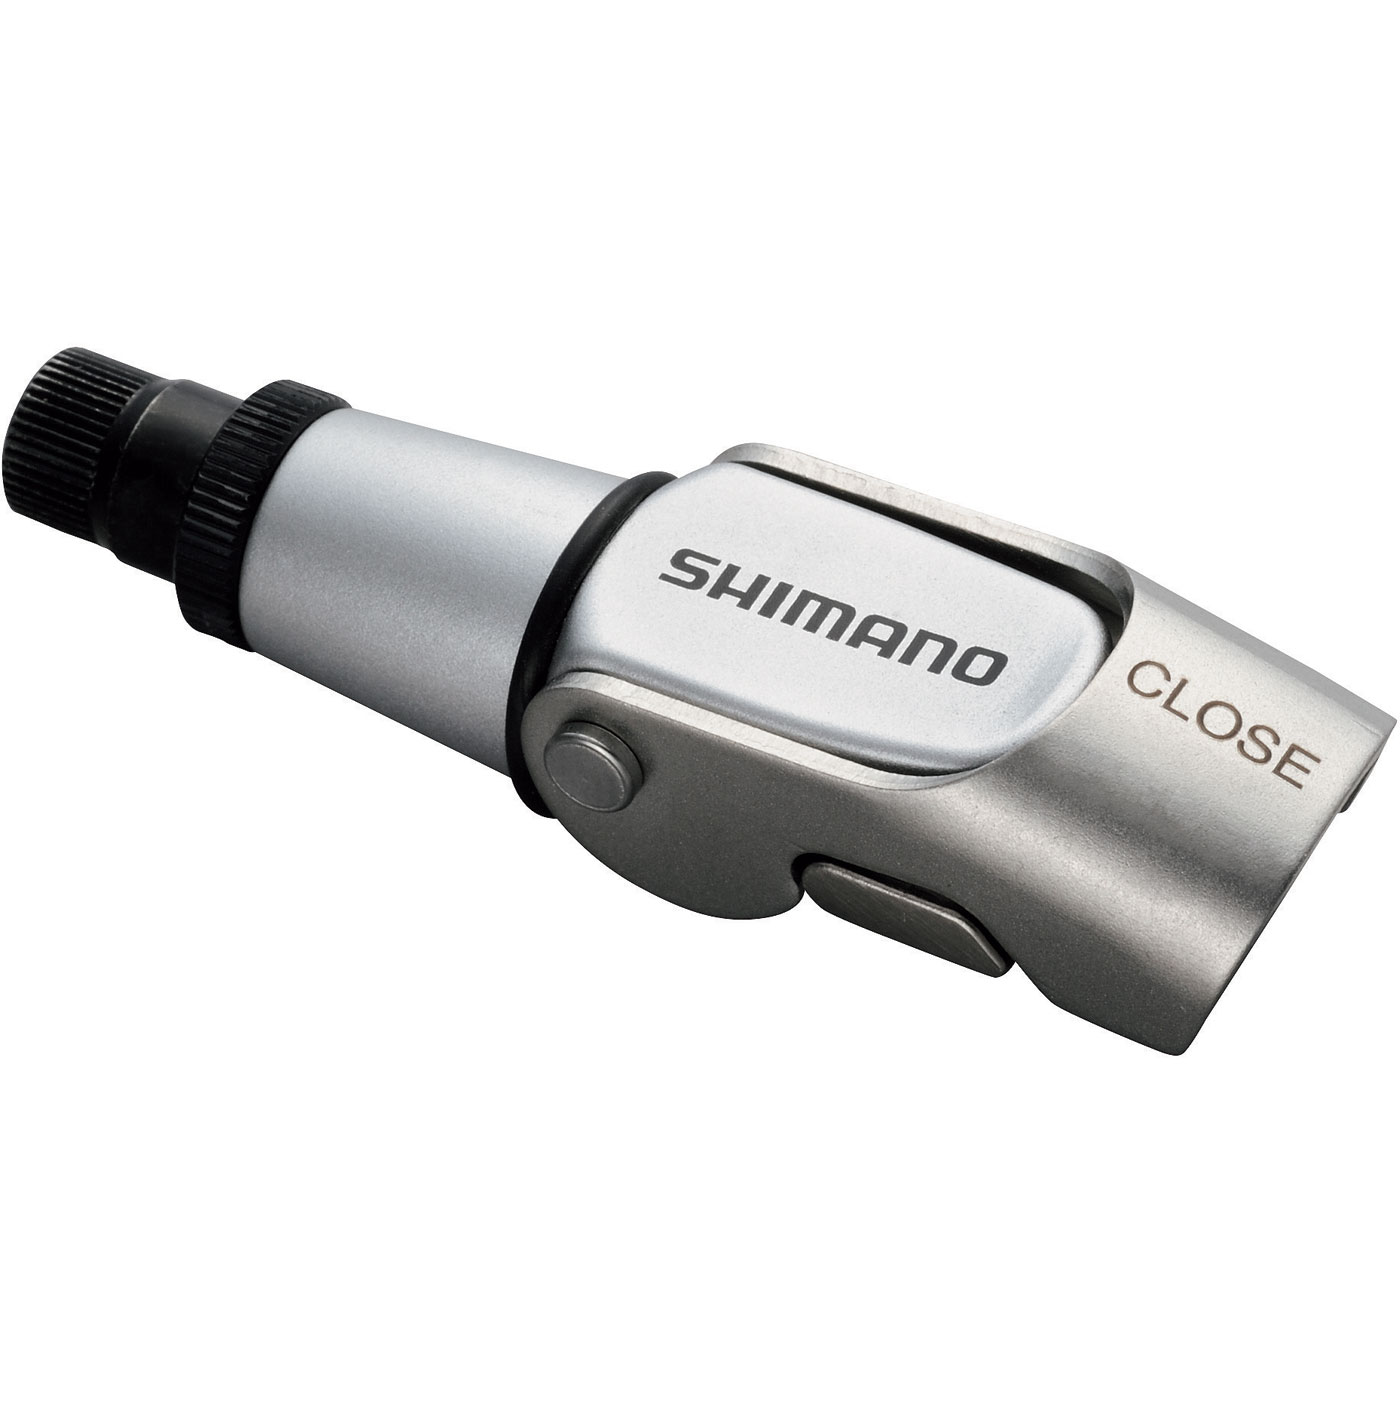 Produktbild von Shimano SM-CB90 Bremszugeinsteller mit Schnellspanner - silber